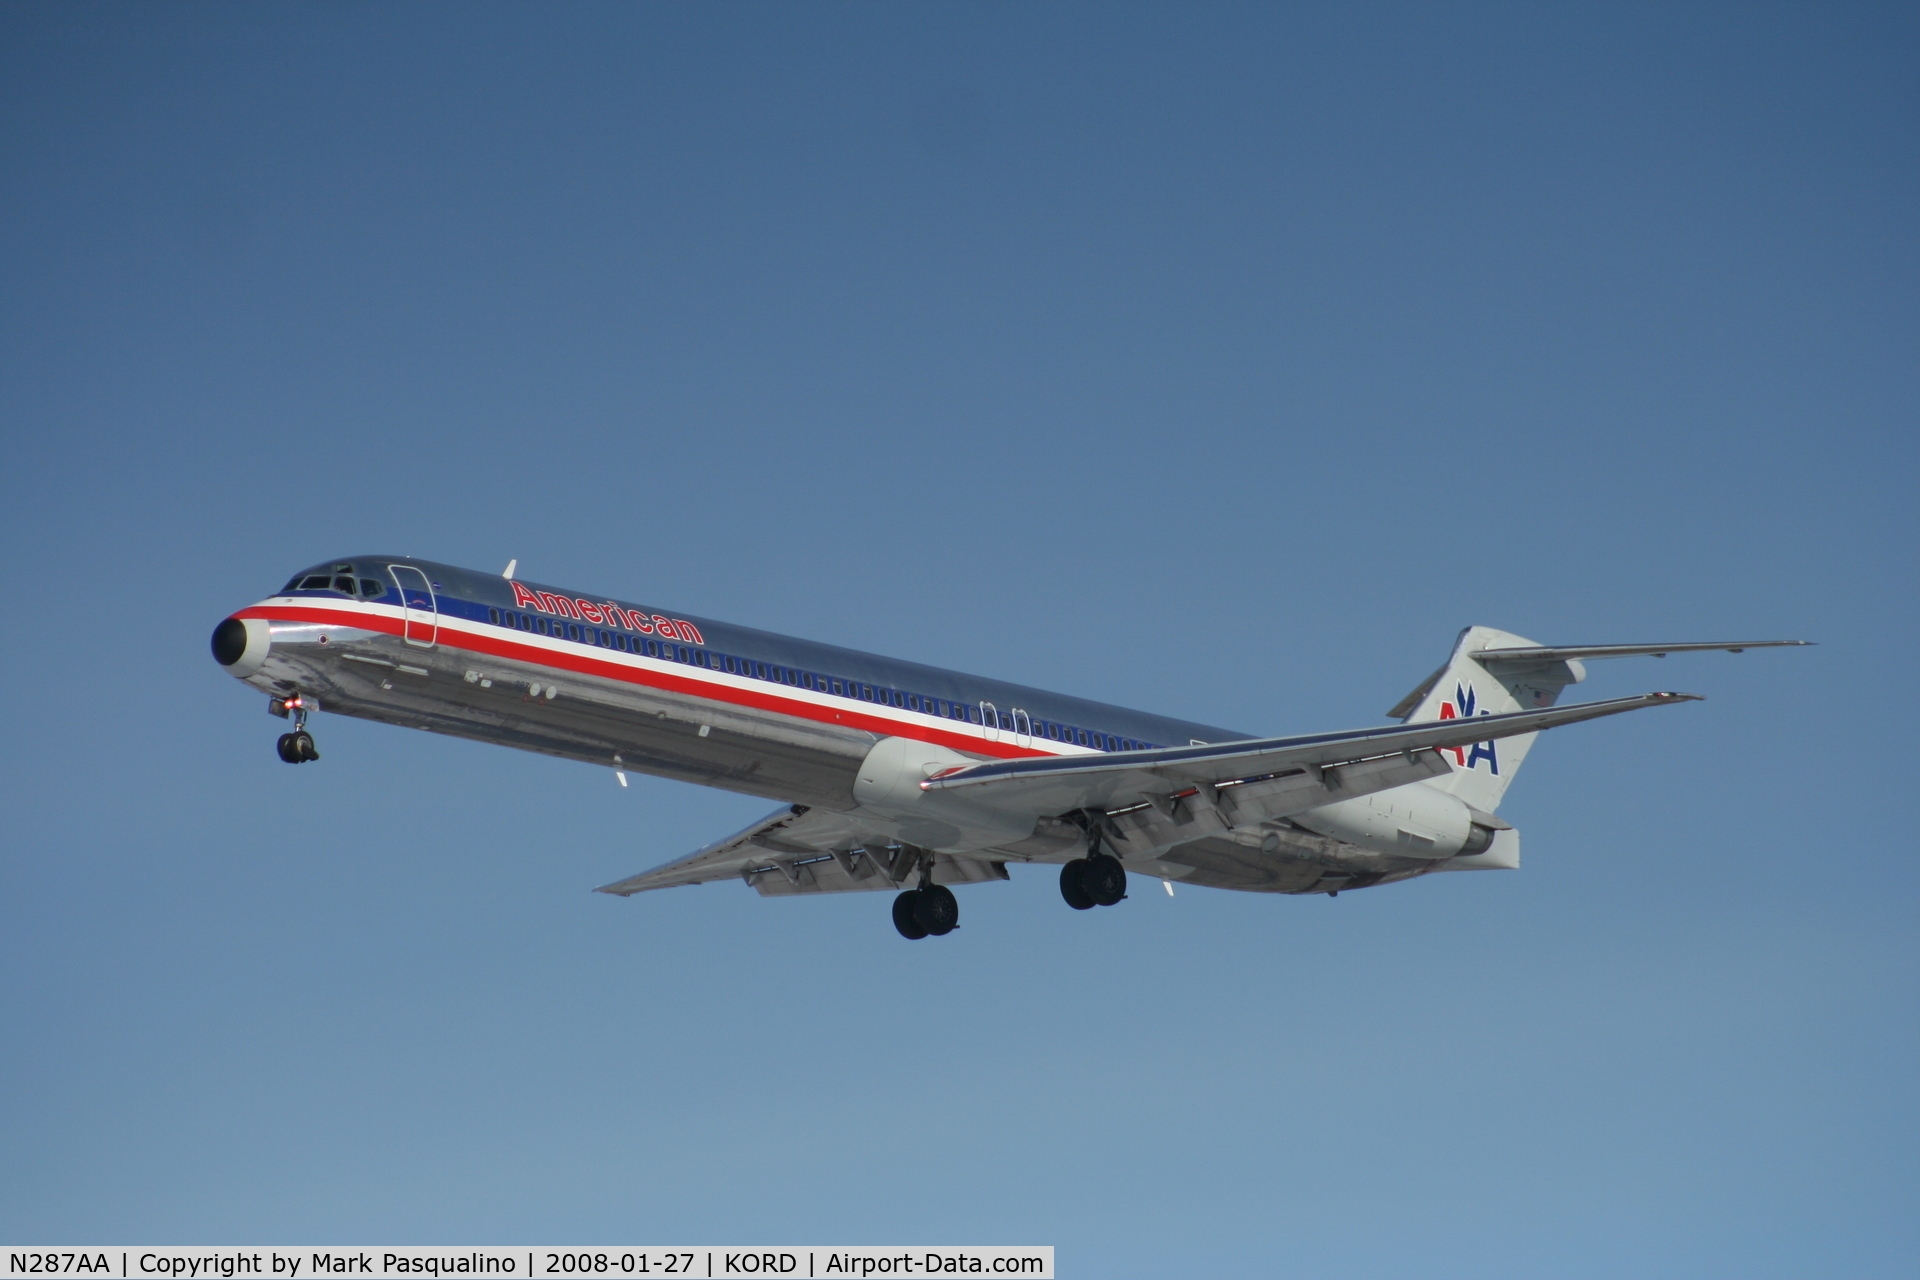 N287AA, 1985 McDonnell Douglas MD-82 (DC-9-82) C/N 49299, MD-82